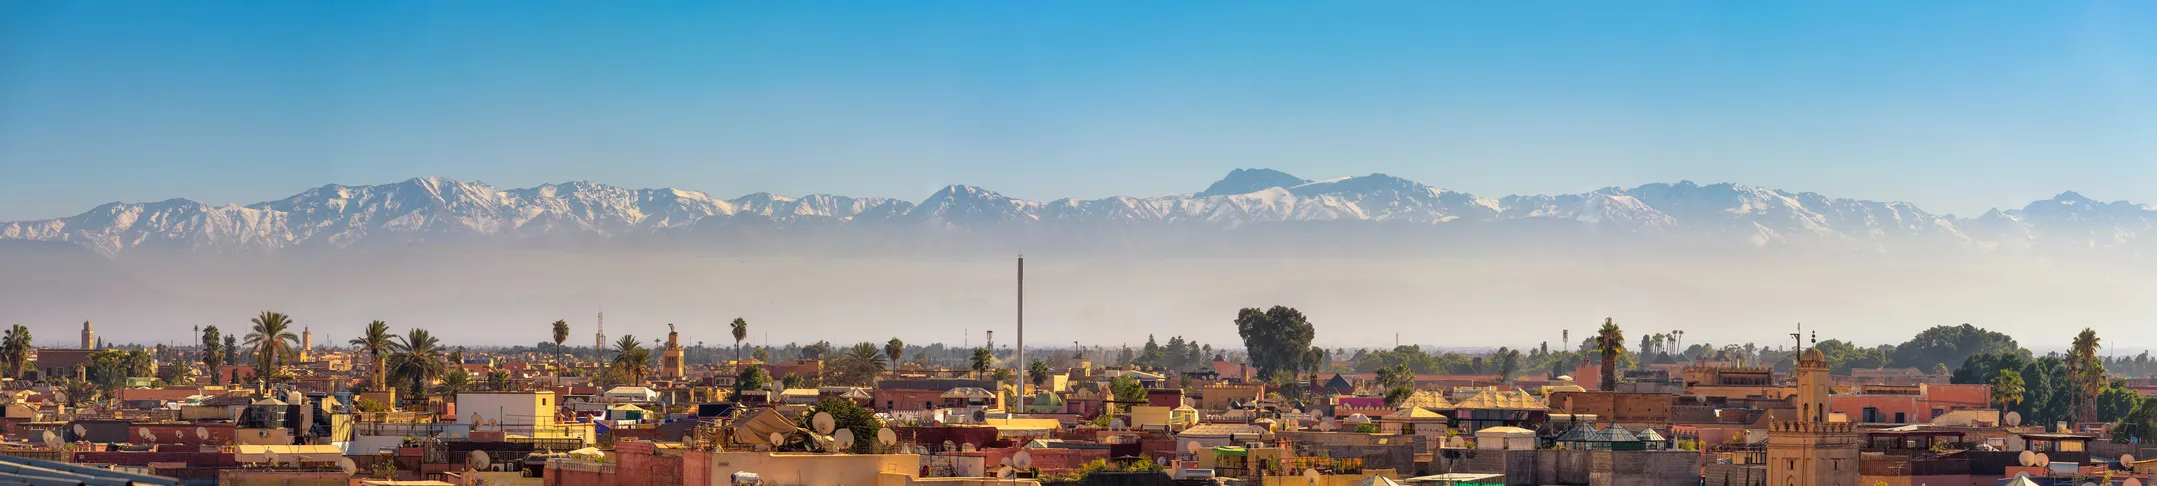 Panorama sur les toits de la ville de Marrakech au Maroc avec les montagnes enneigées de l'Atlas en arrière-plan  © iStock / miroslav_1